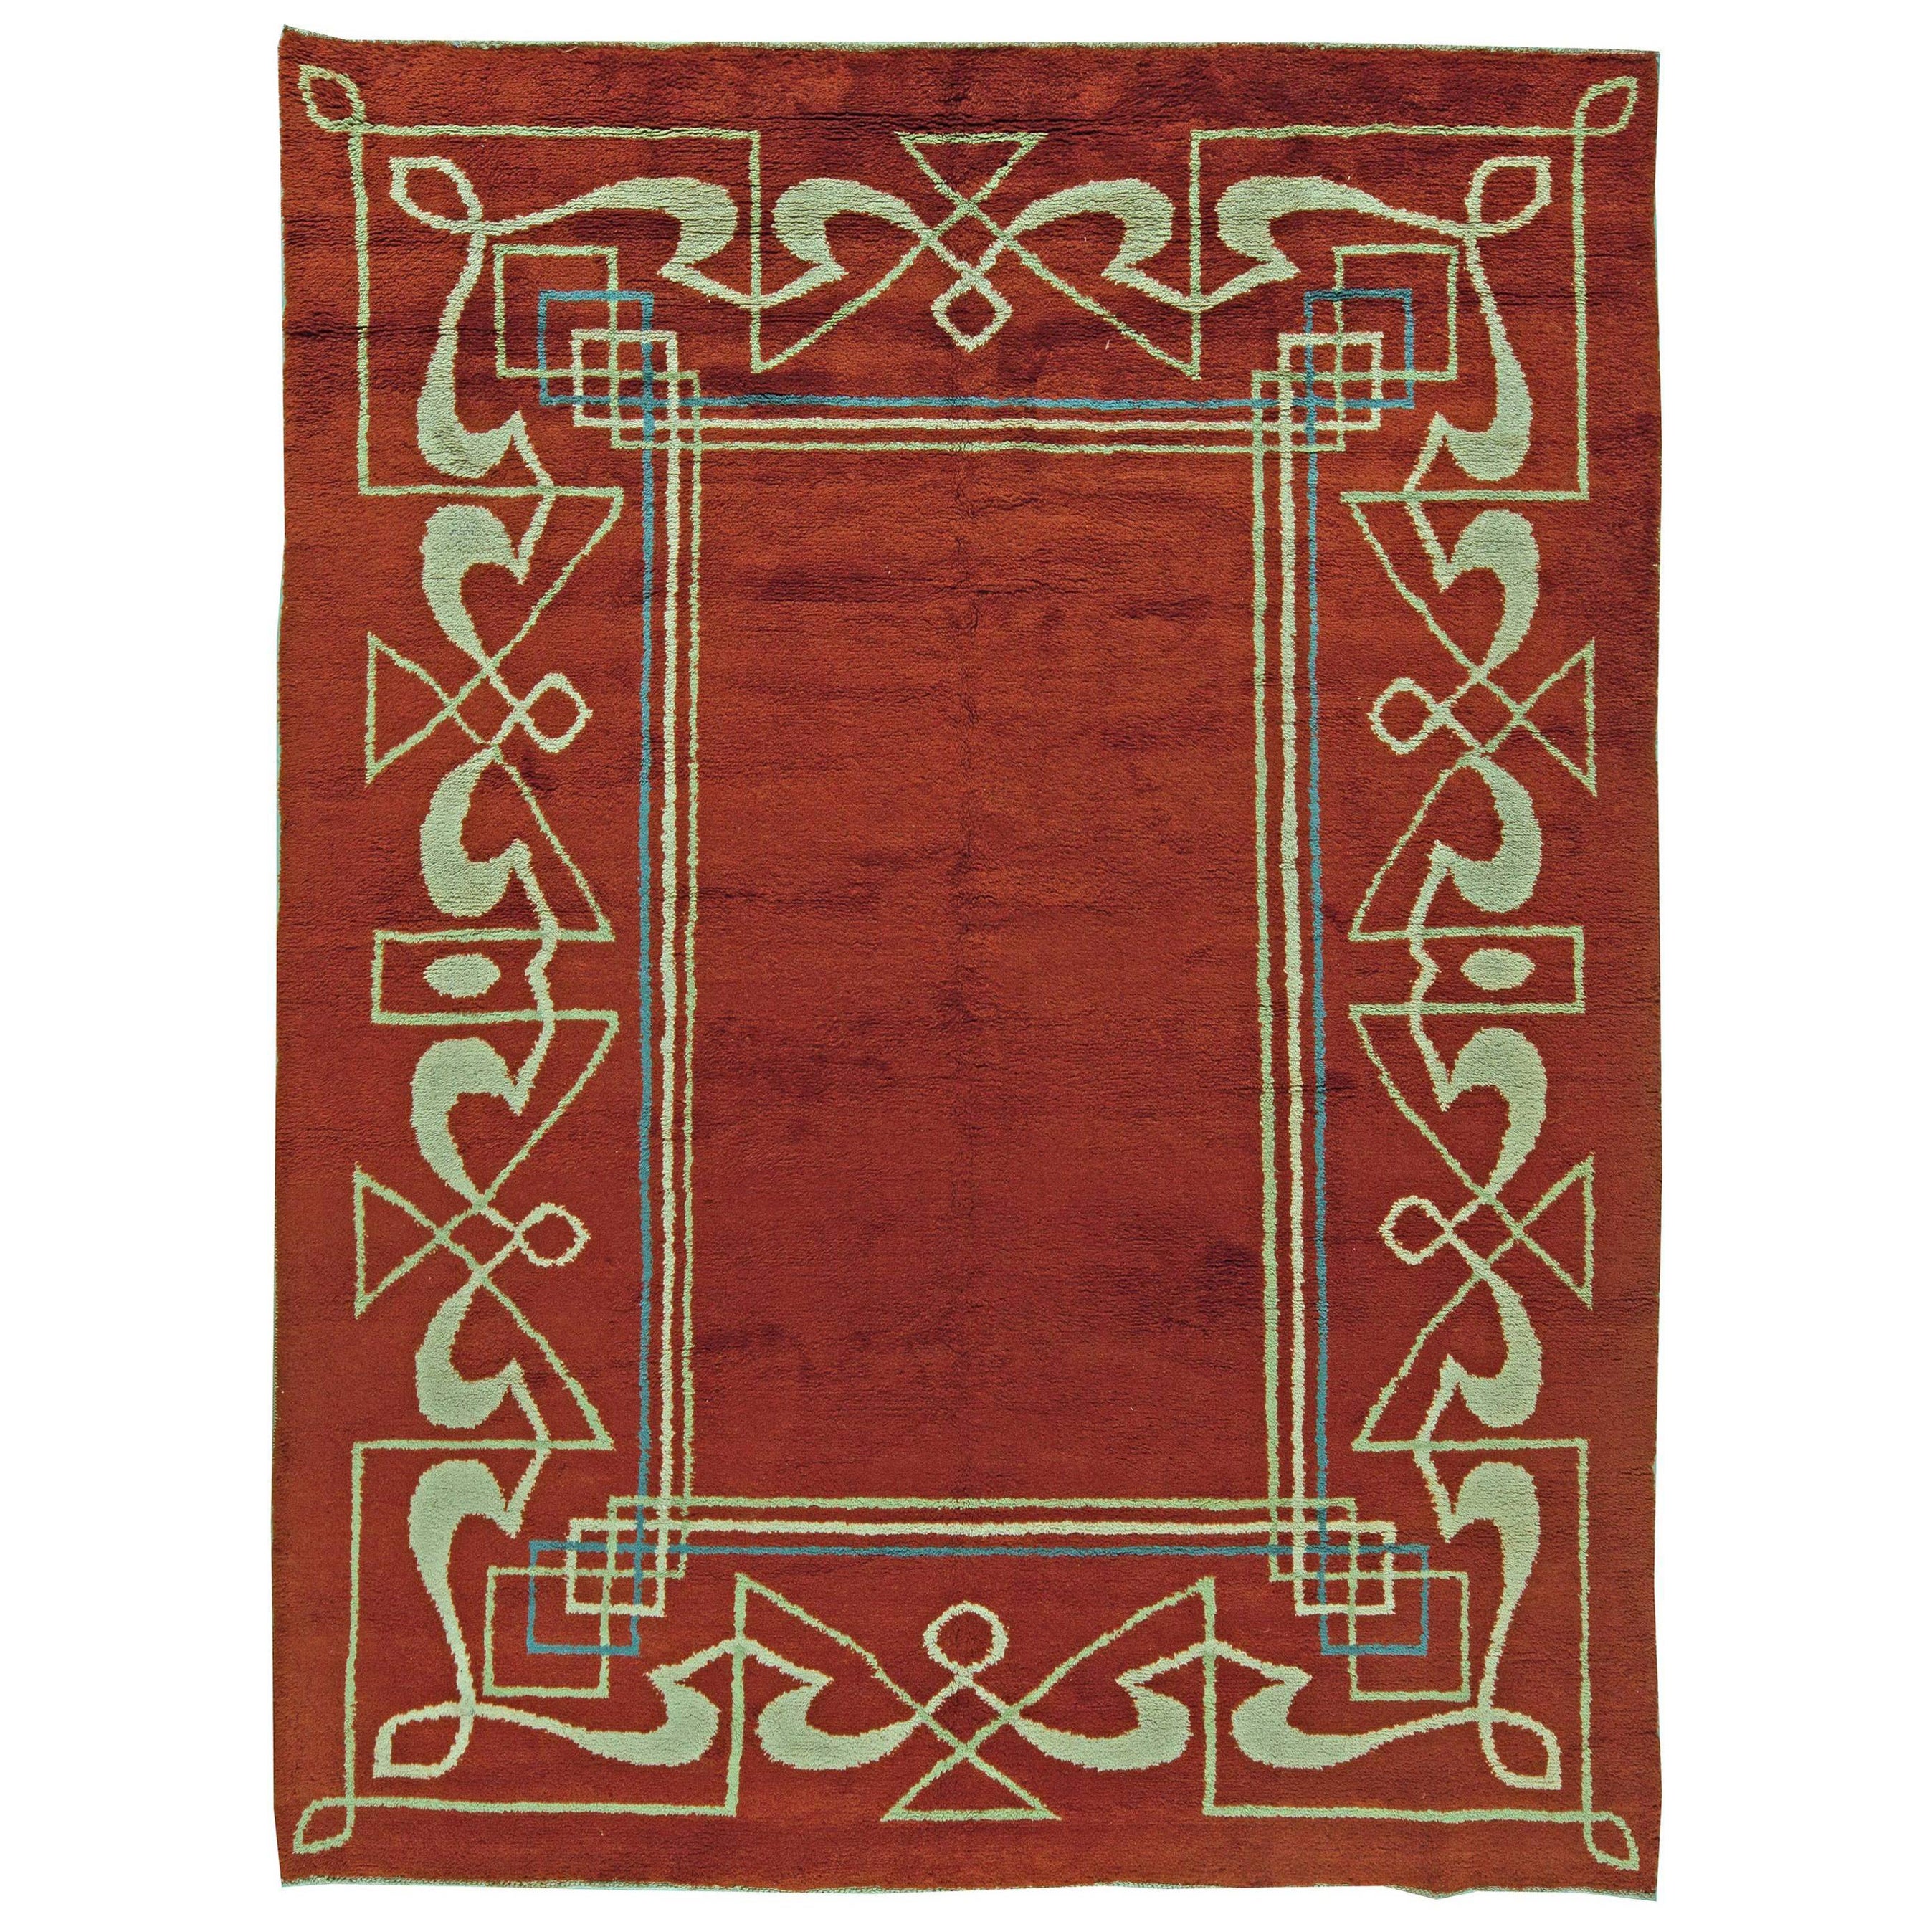 Einzigartiger Art Deco Teppich aus roter, brauner Wolle, handgefertigt